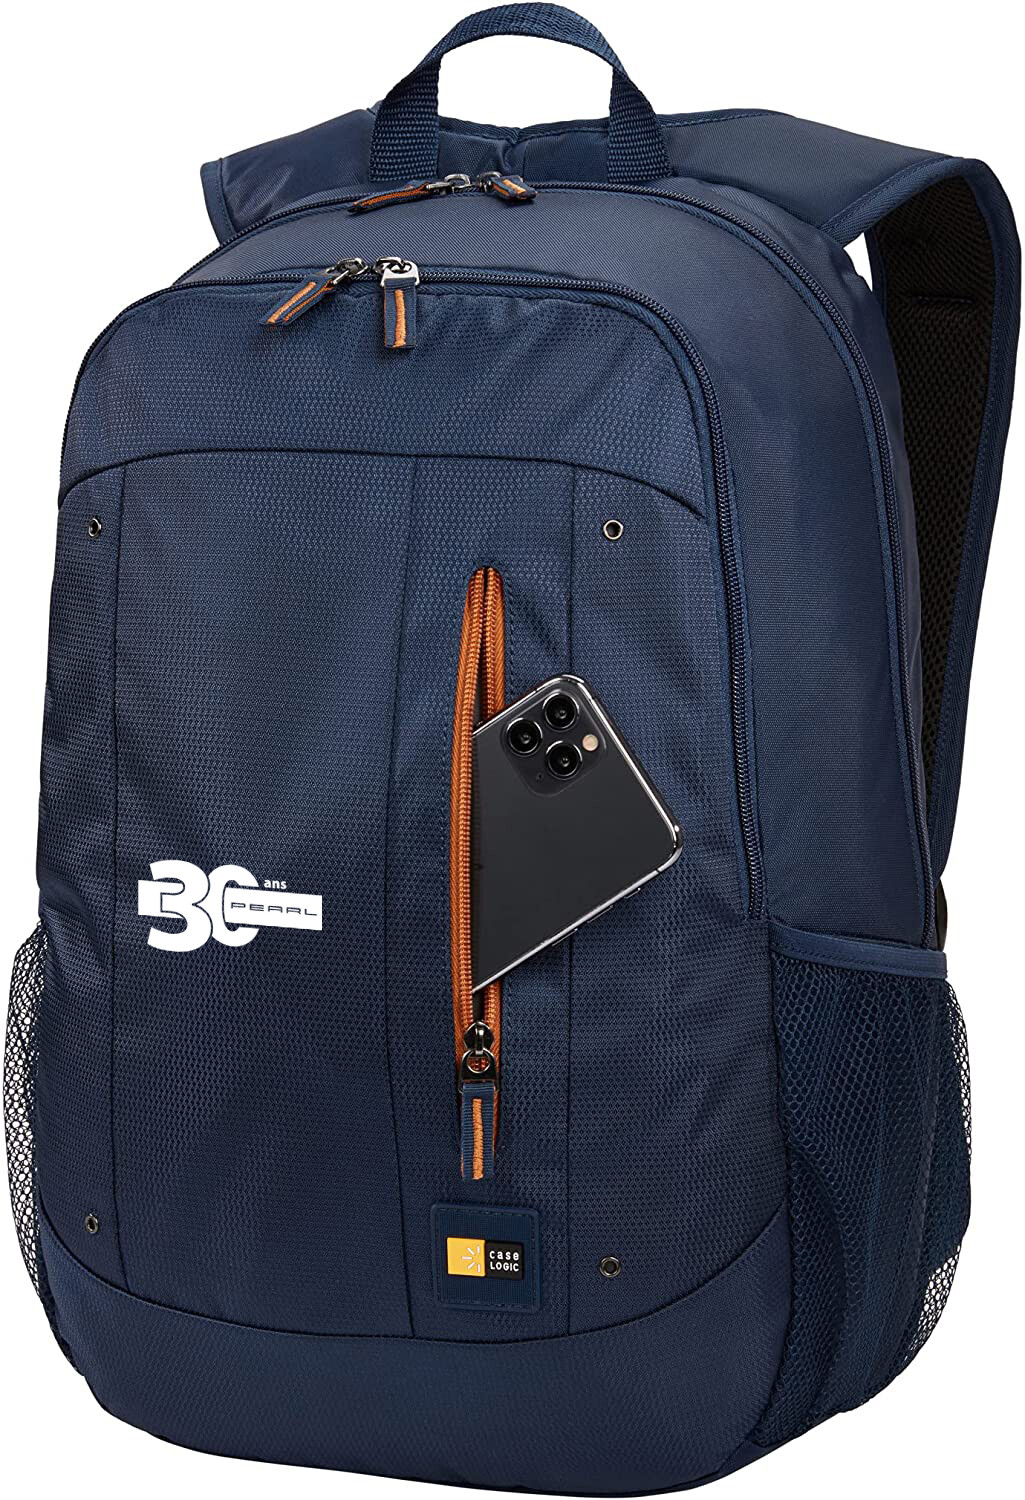 Un sac à dos PC ou une sacoche pour ordinateur portable ? un-sac-a-dos -pc-ou-une-sacoche-pour-ordinateur-portable-n395